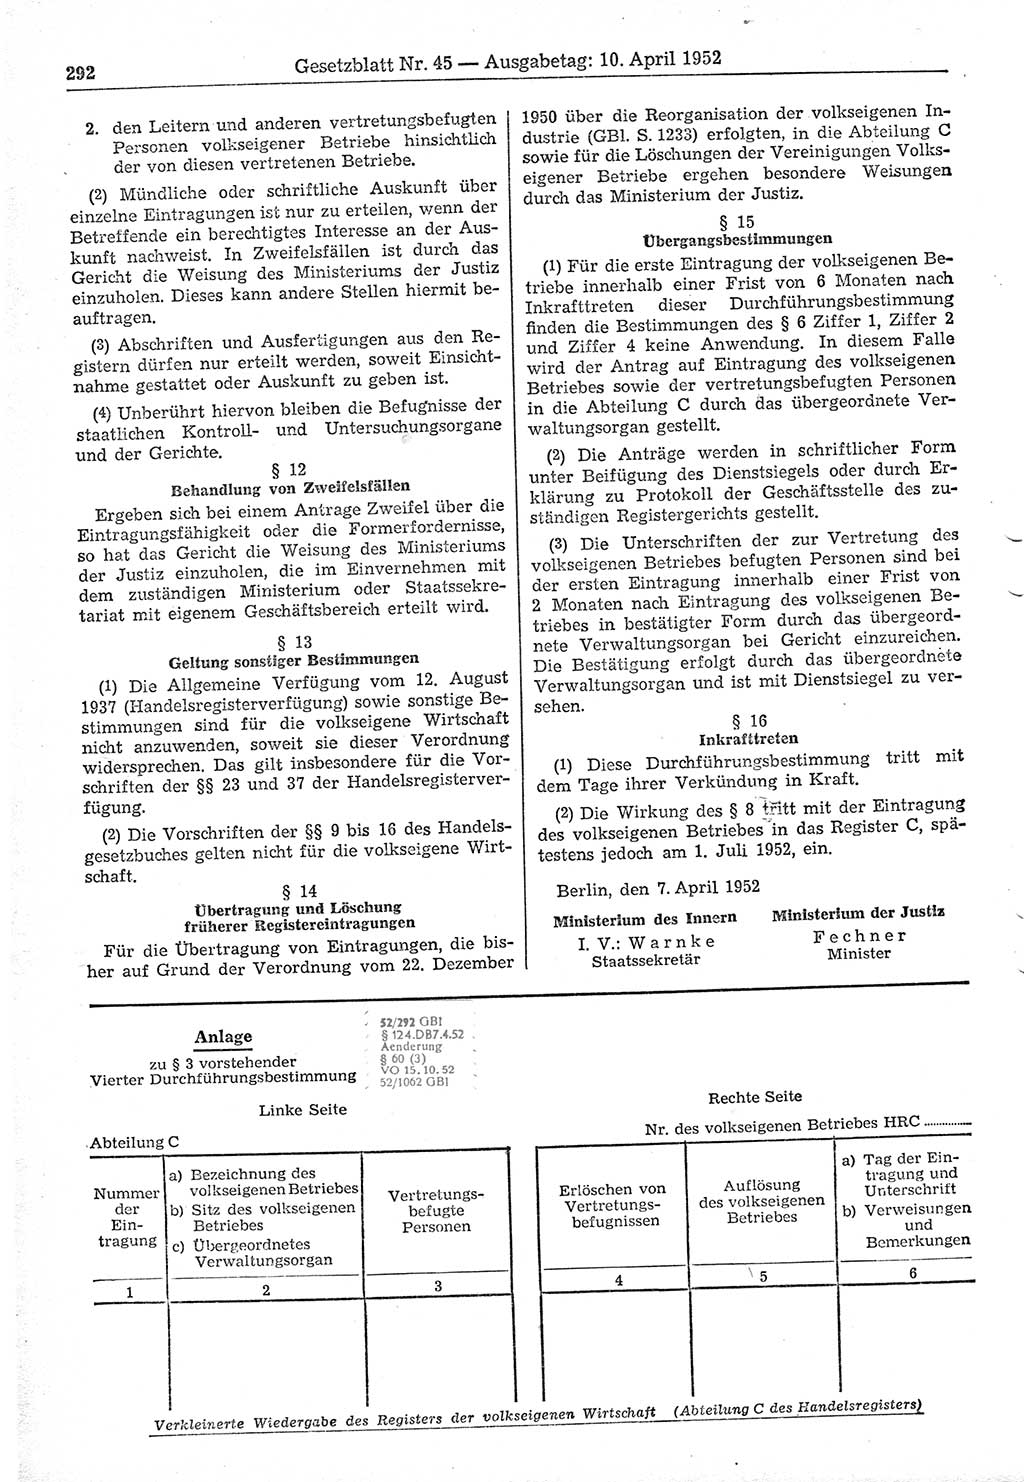 Gesetzblatt (GBl.) der Deutschen Demokratischen Republik (DDR) 1952, Seite 292 (GBl. DDR 1952, S. 292)